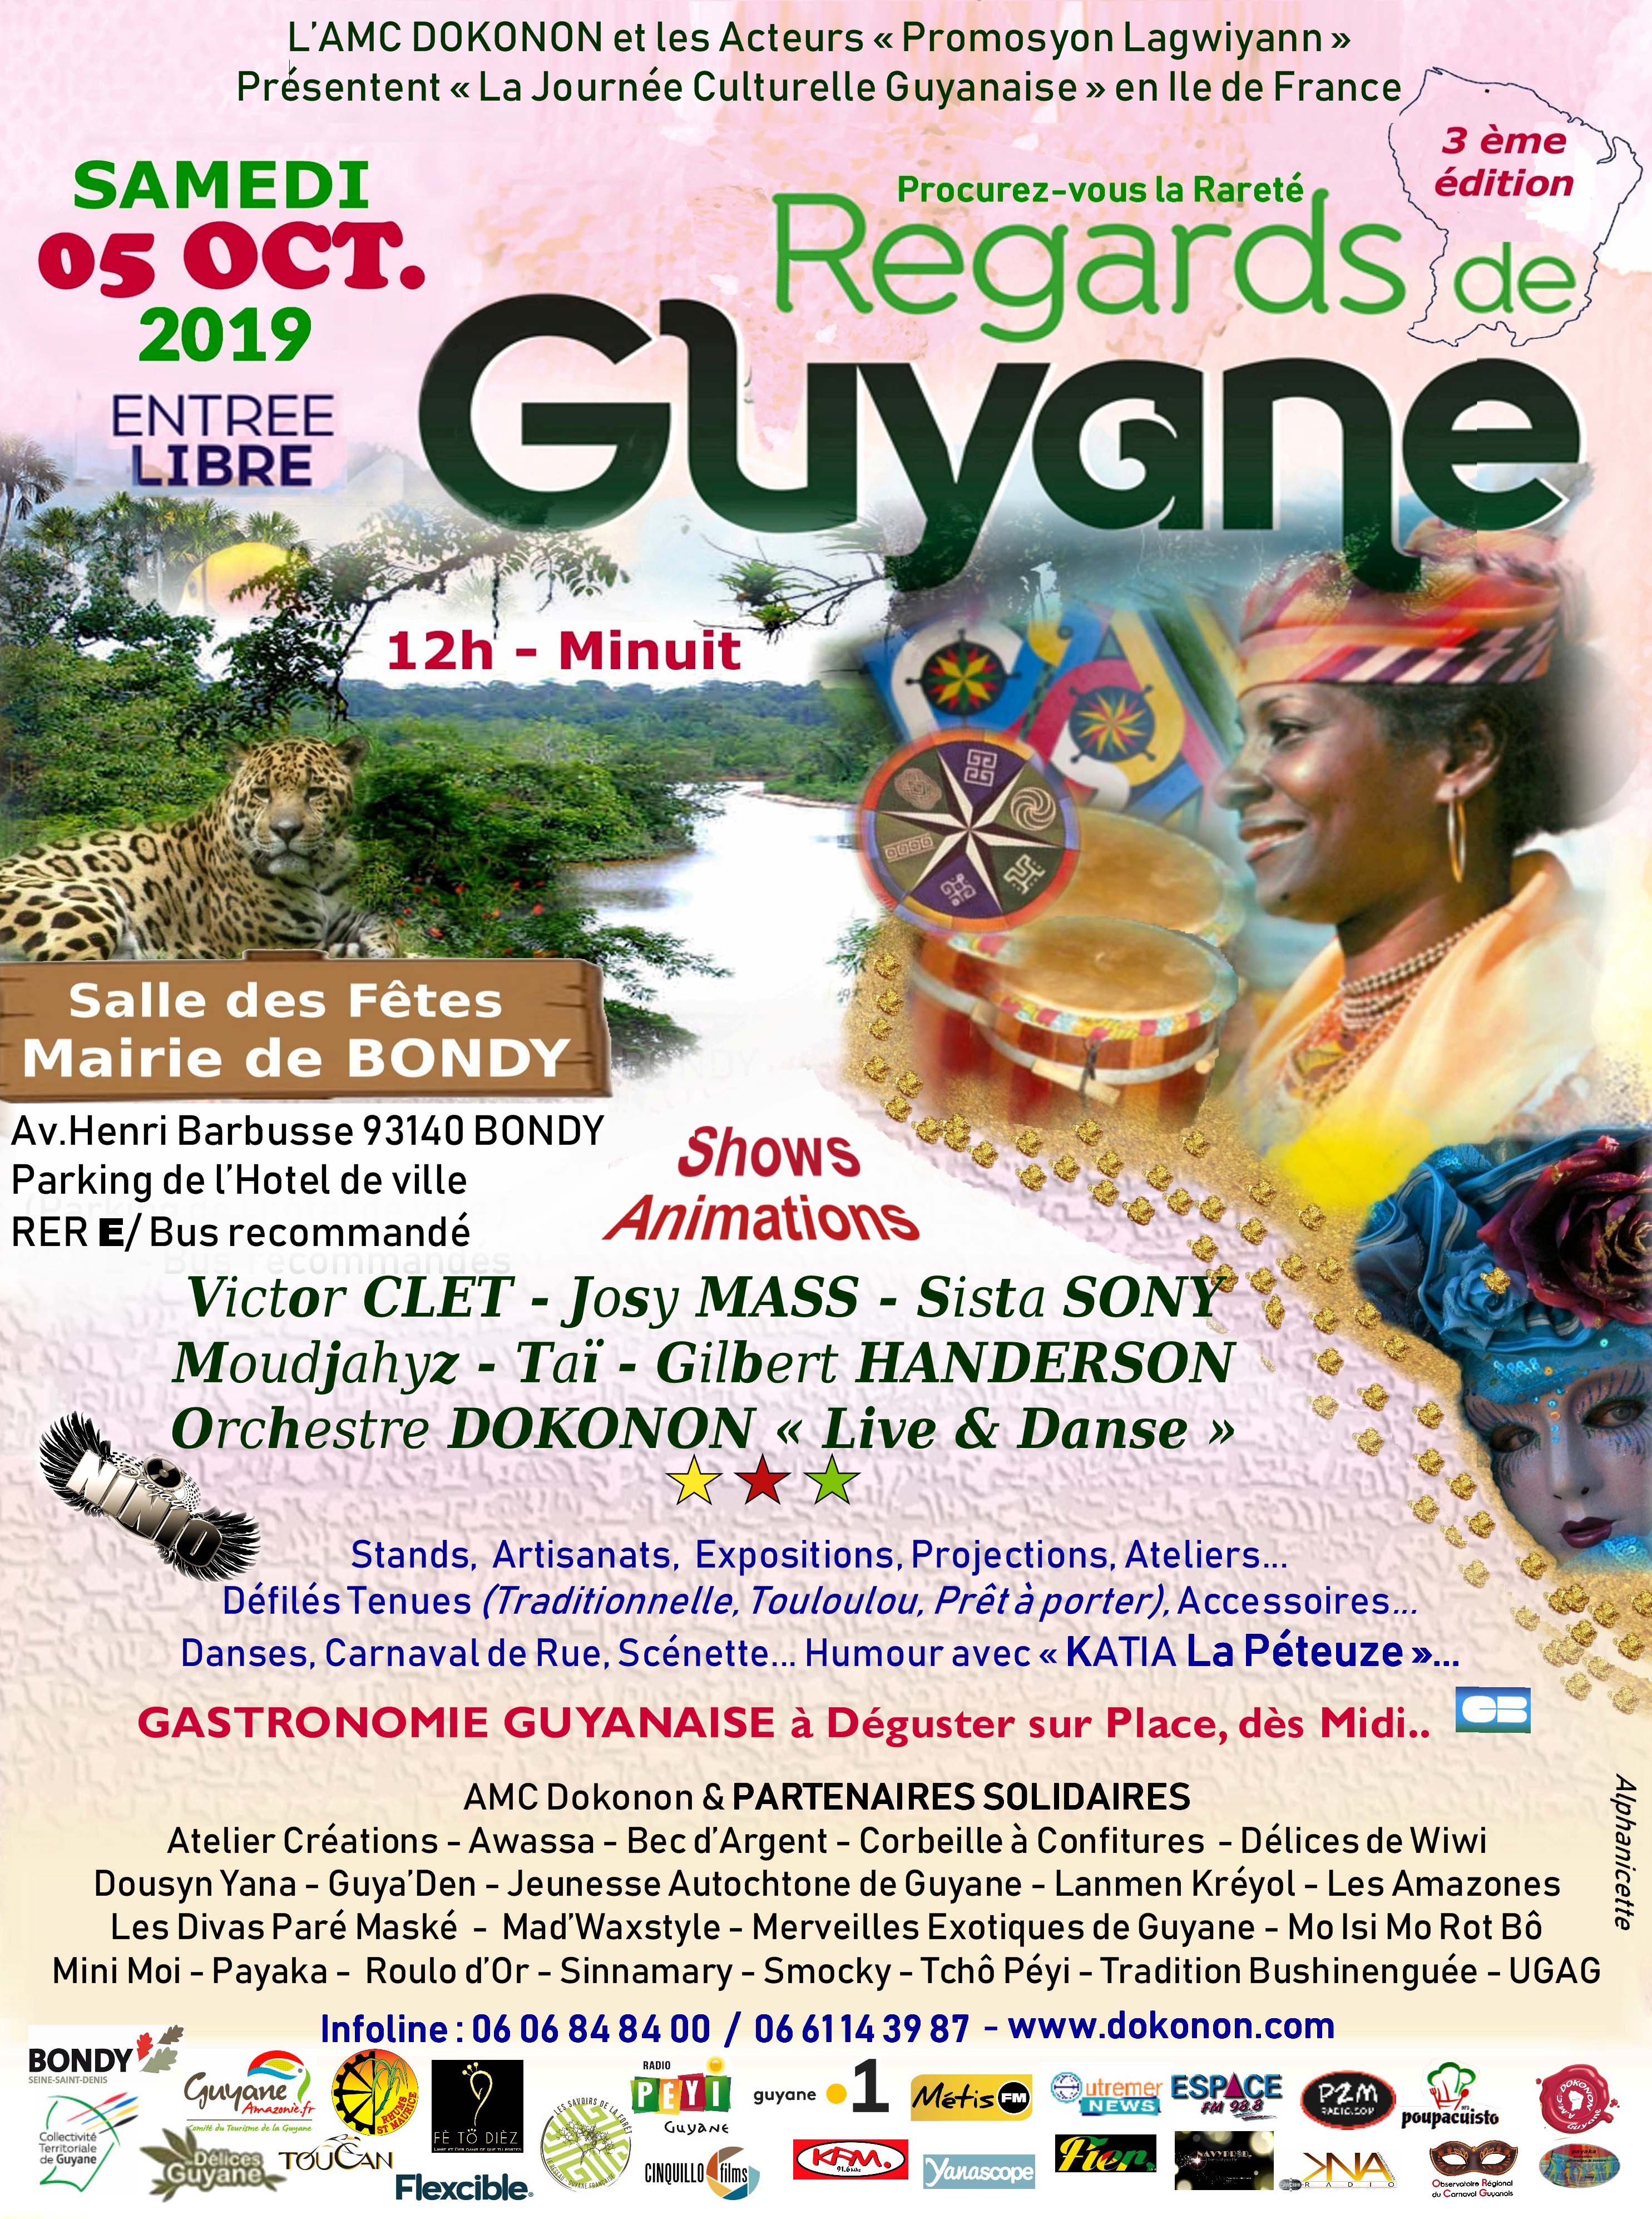 Regards de Guyane 2019 - Affiche Officielle - 3eme ed - AMC Dokonon & Partenaires